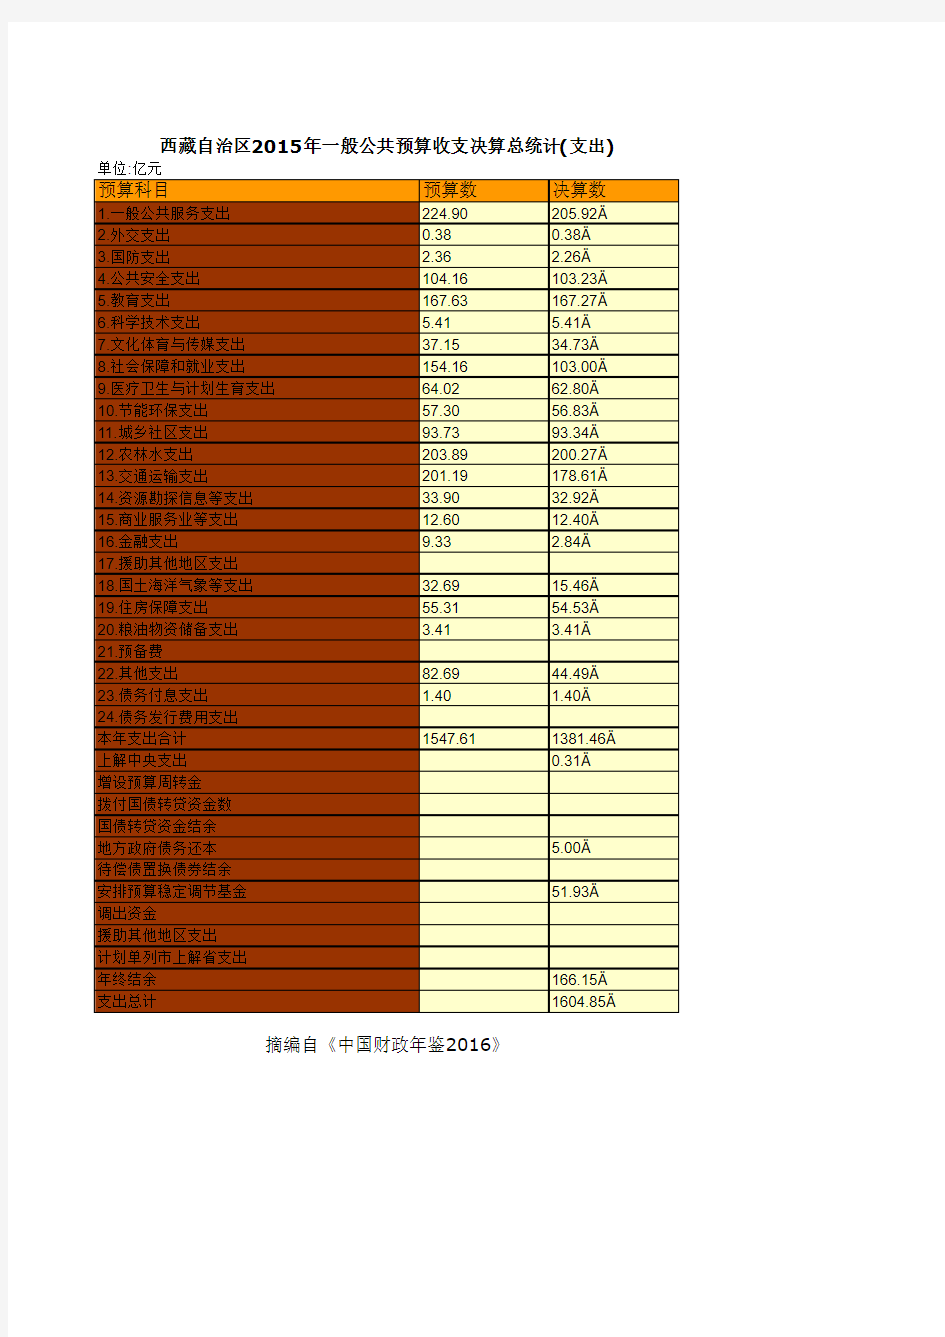 西藏自治区2015年一般公共预算收支决算总统计(支出)